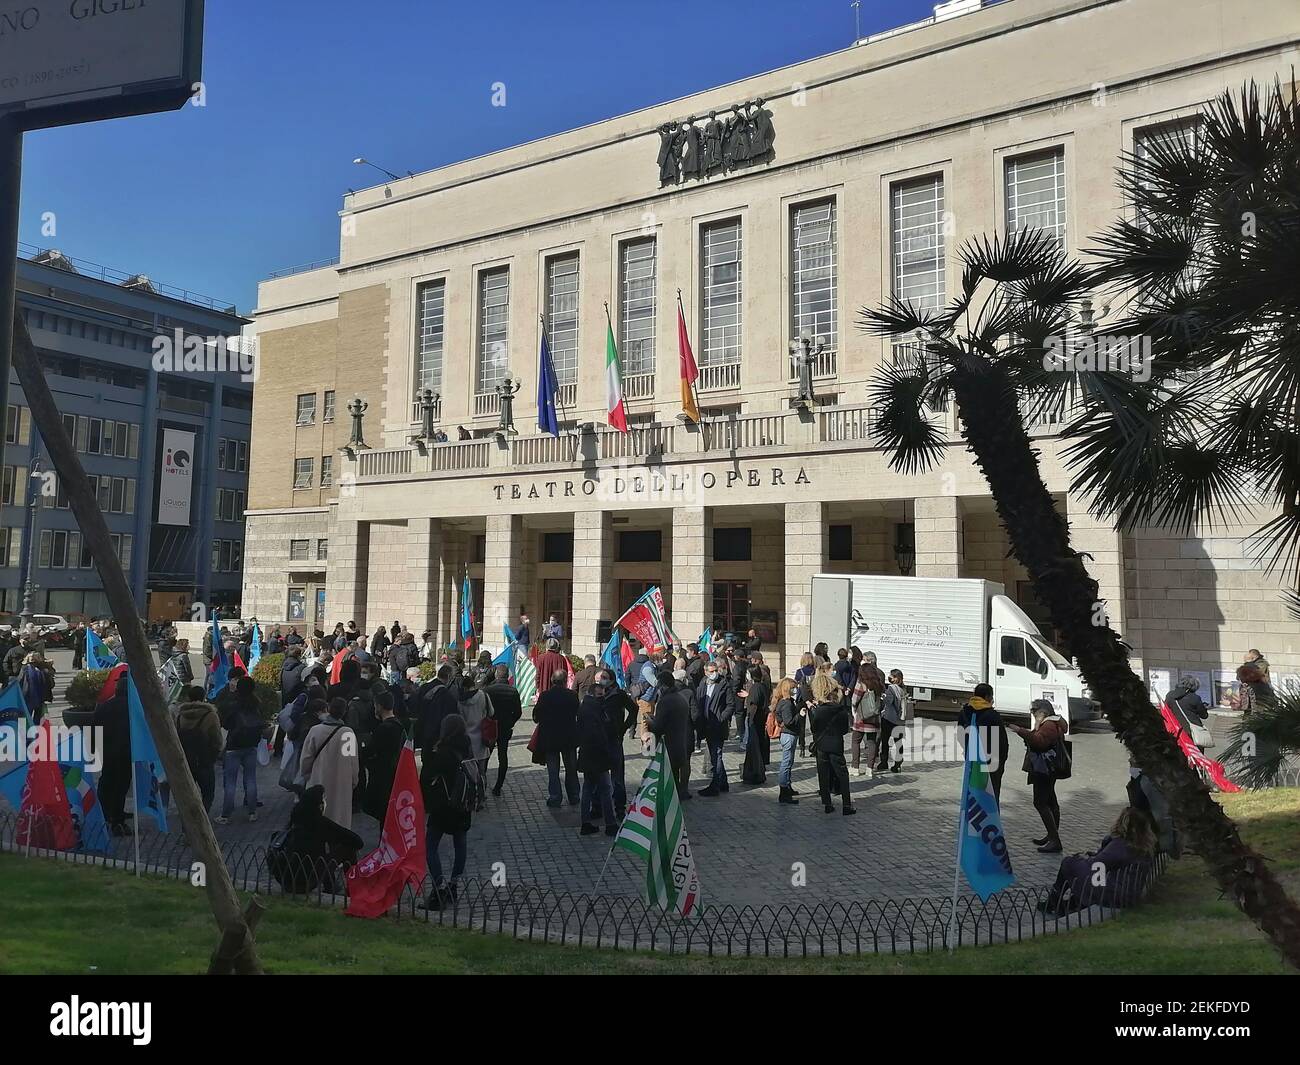 Roma, Italia - 23 febbraio 2021: Covid, protesta al Teatro dell'Opera Stock Photo